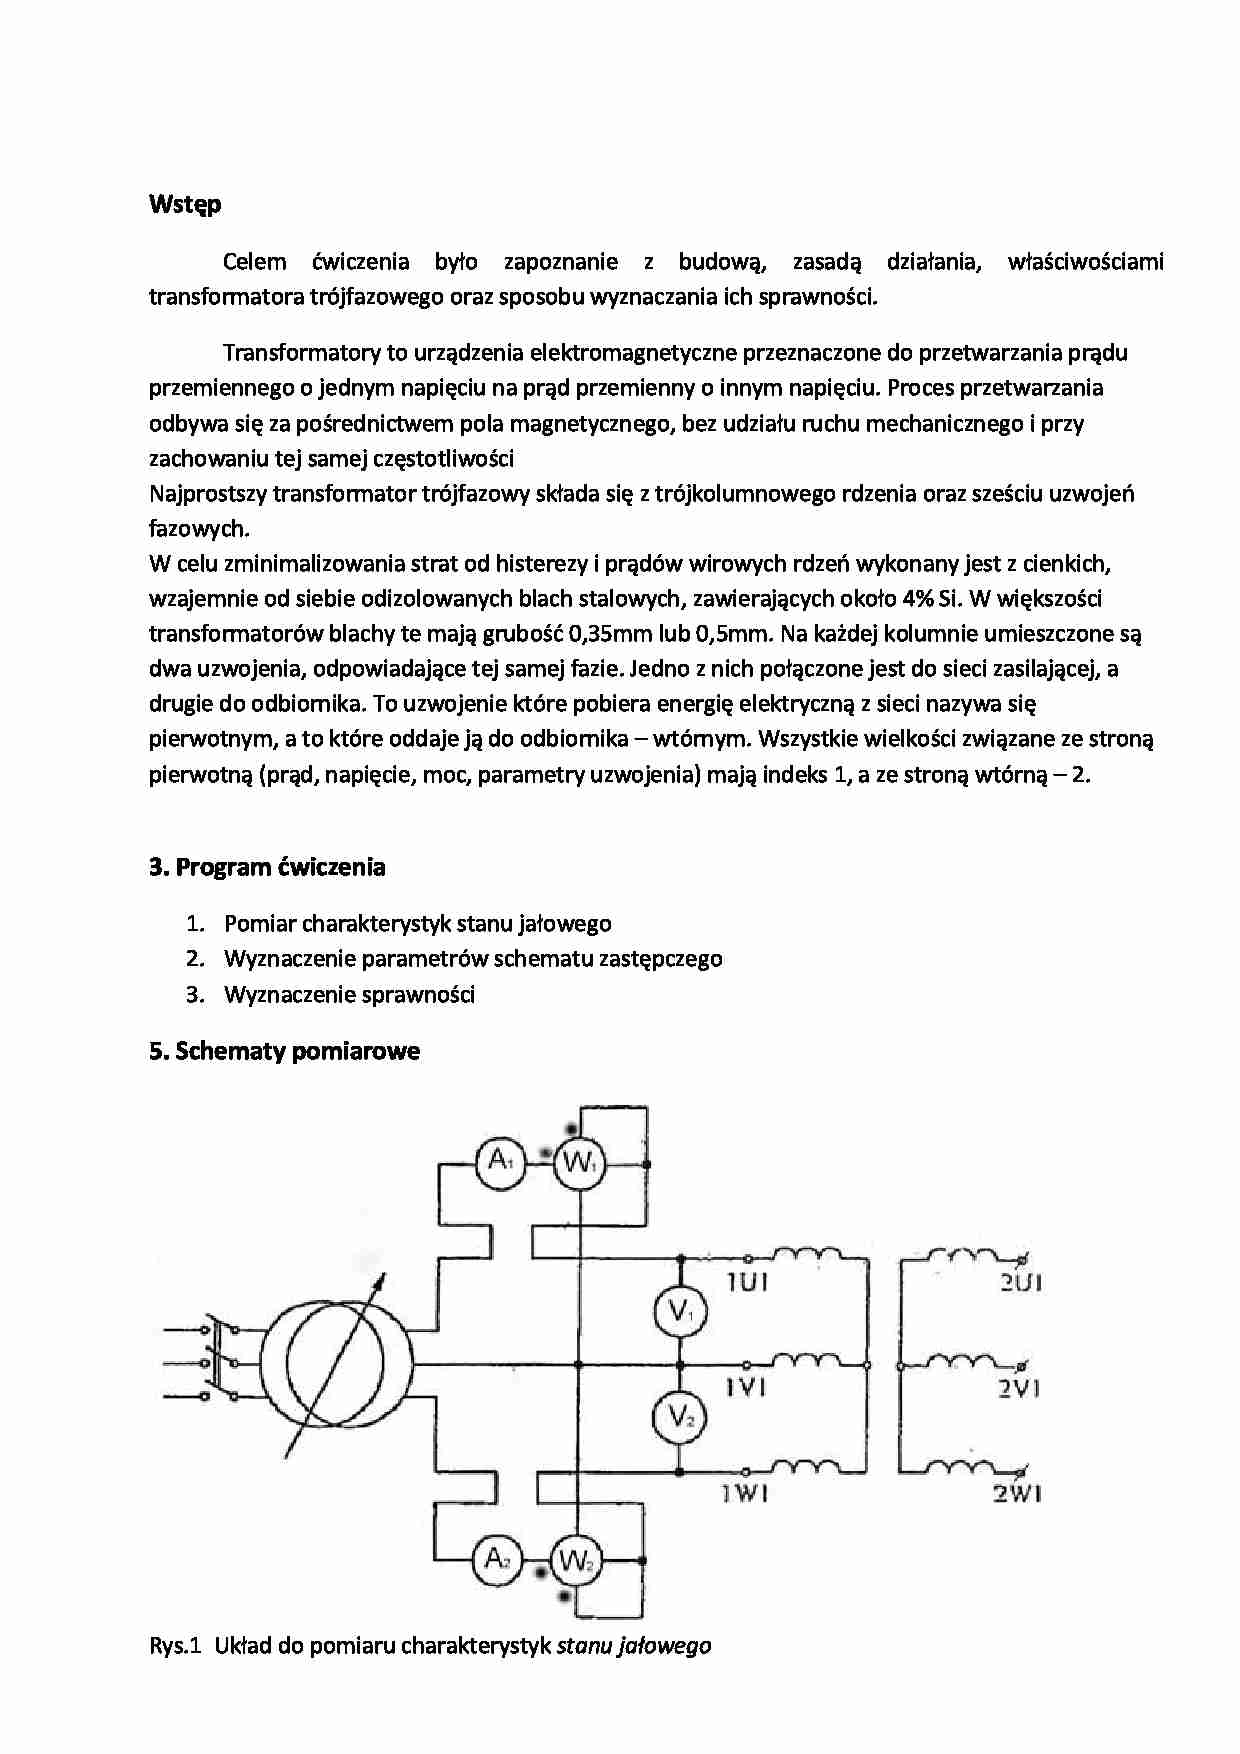 Właściwości transformatora trójfazowego-opracowanie - strona 1